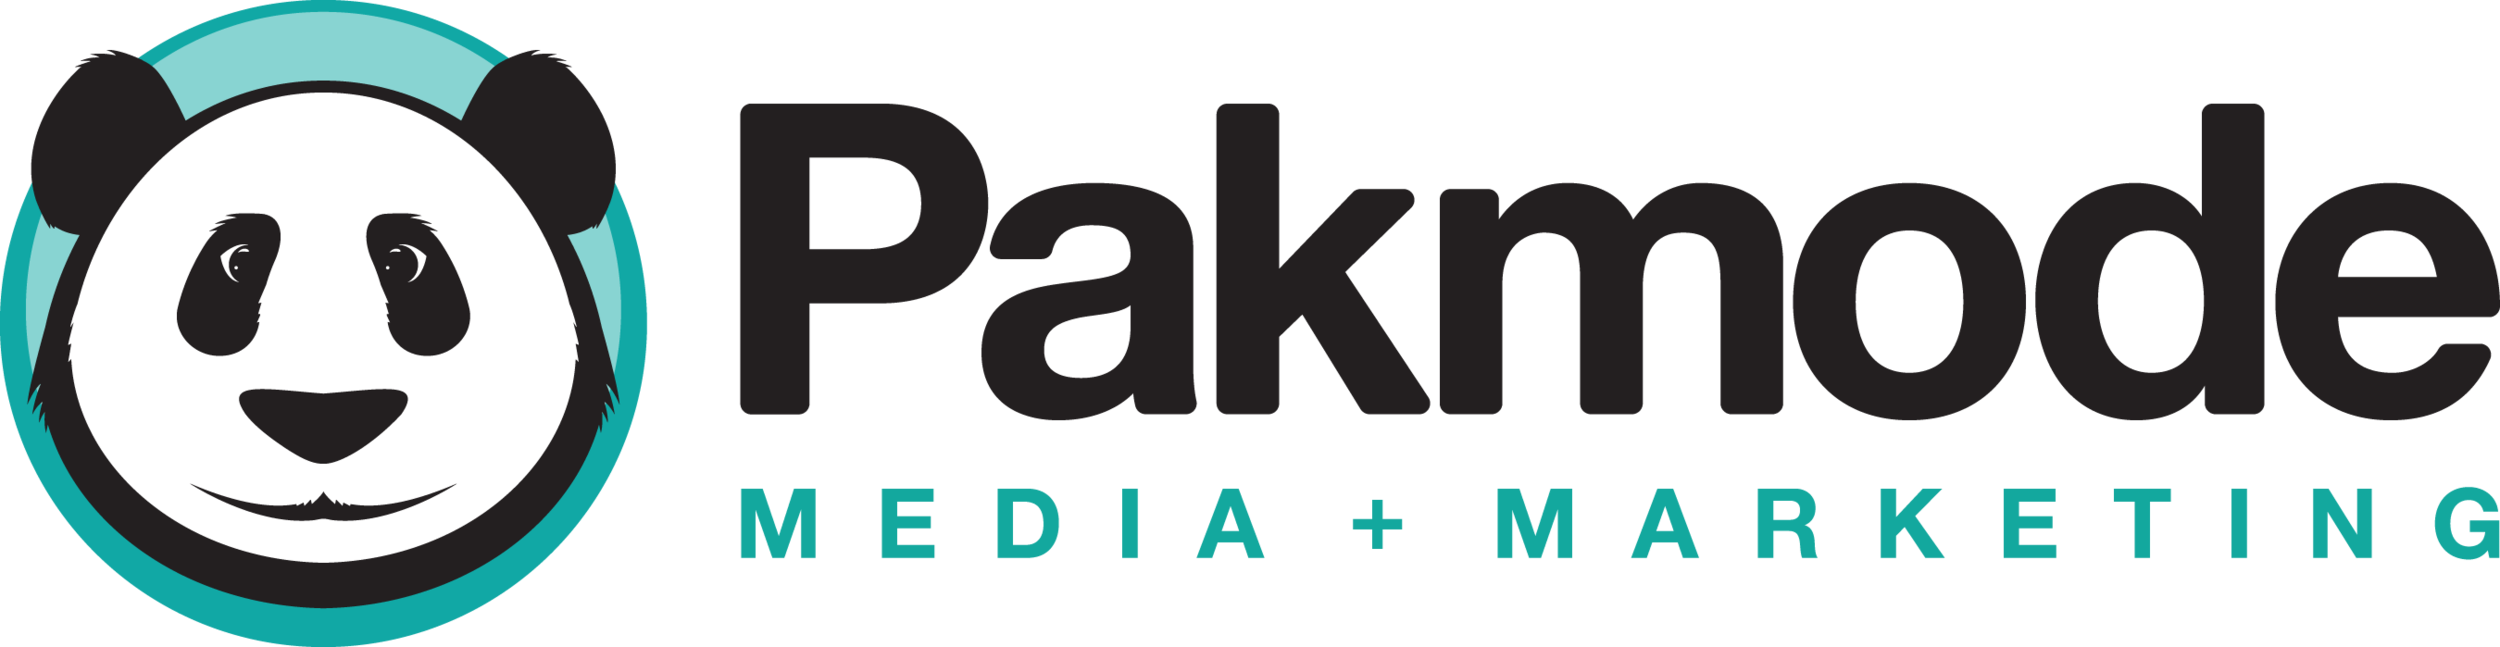 Pakmode Logo v01b (Landscape) - Full Color - 9'' 300dpi.png